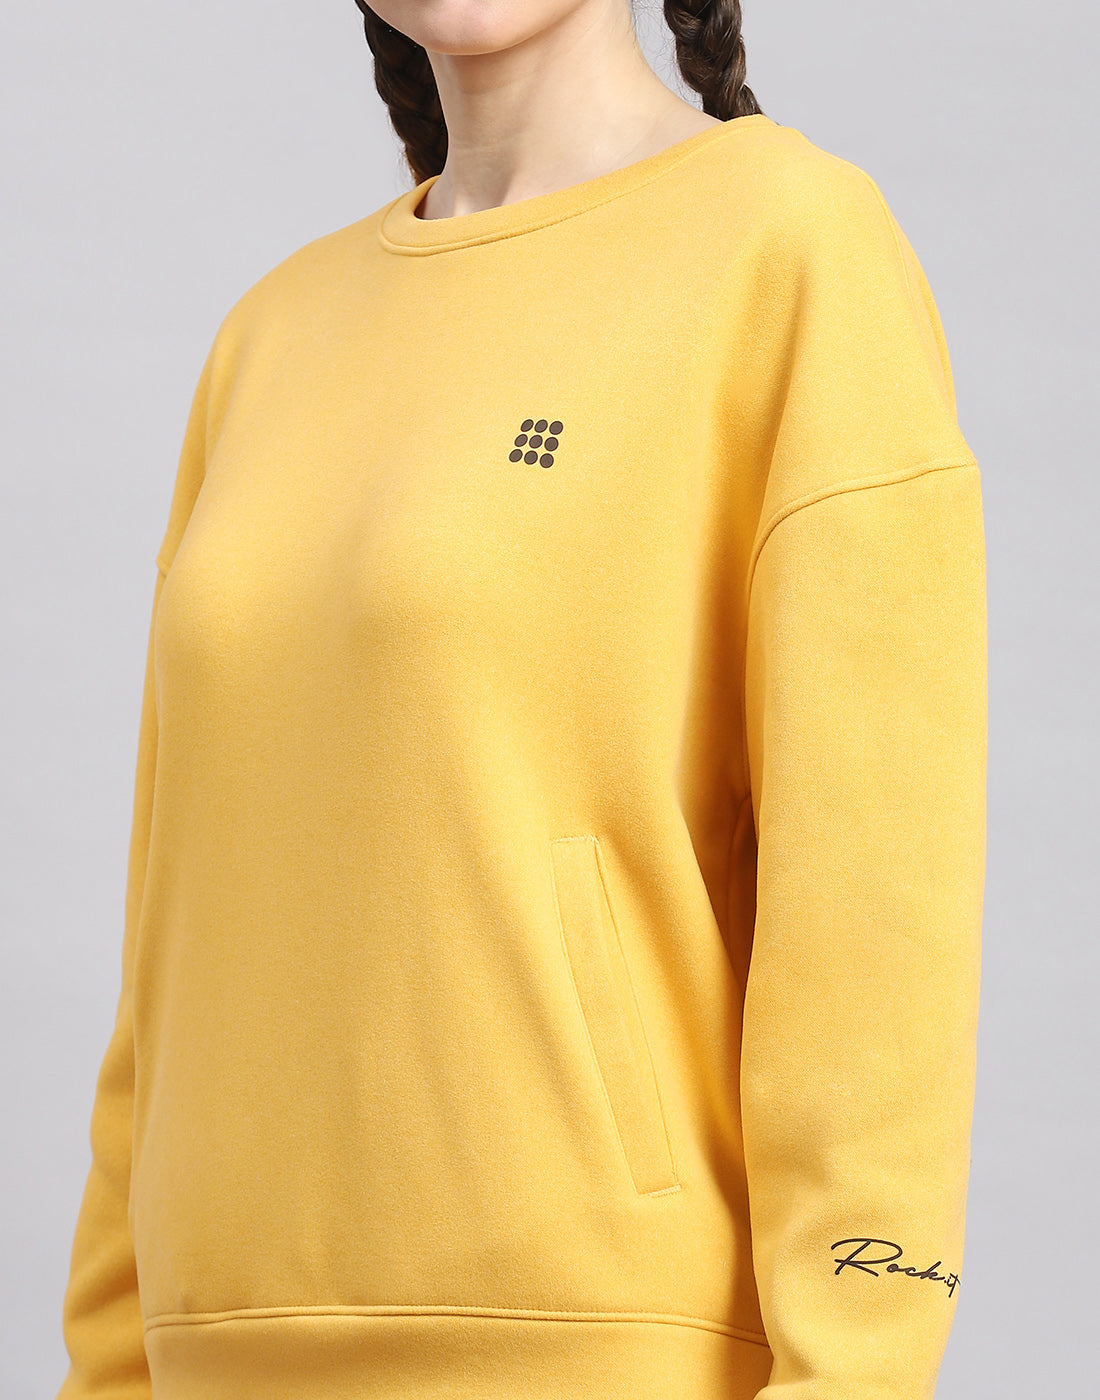 Buy Women Yellow Solid Round Neck Full Sleeve Sweatshirt Online in India -  Rock.it